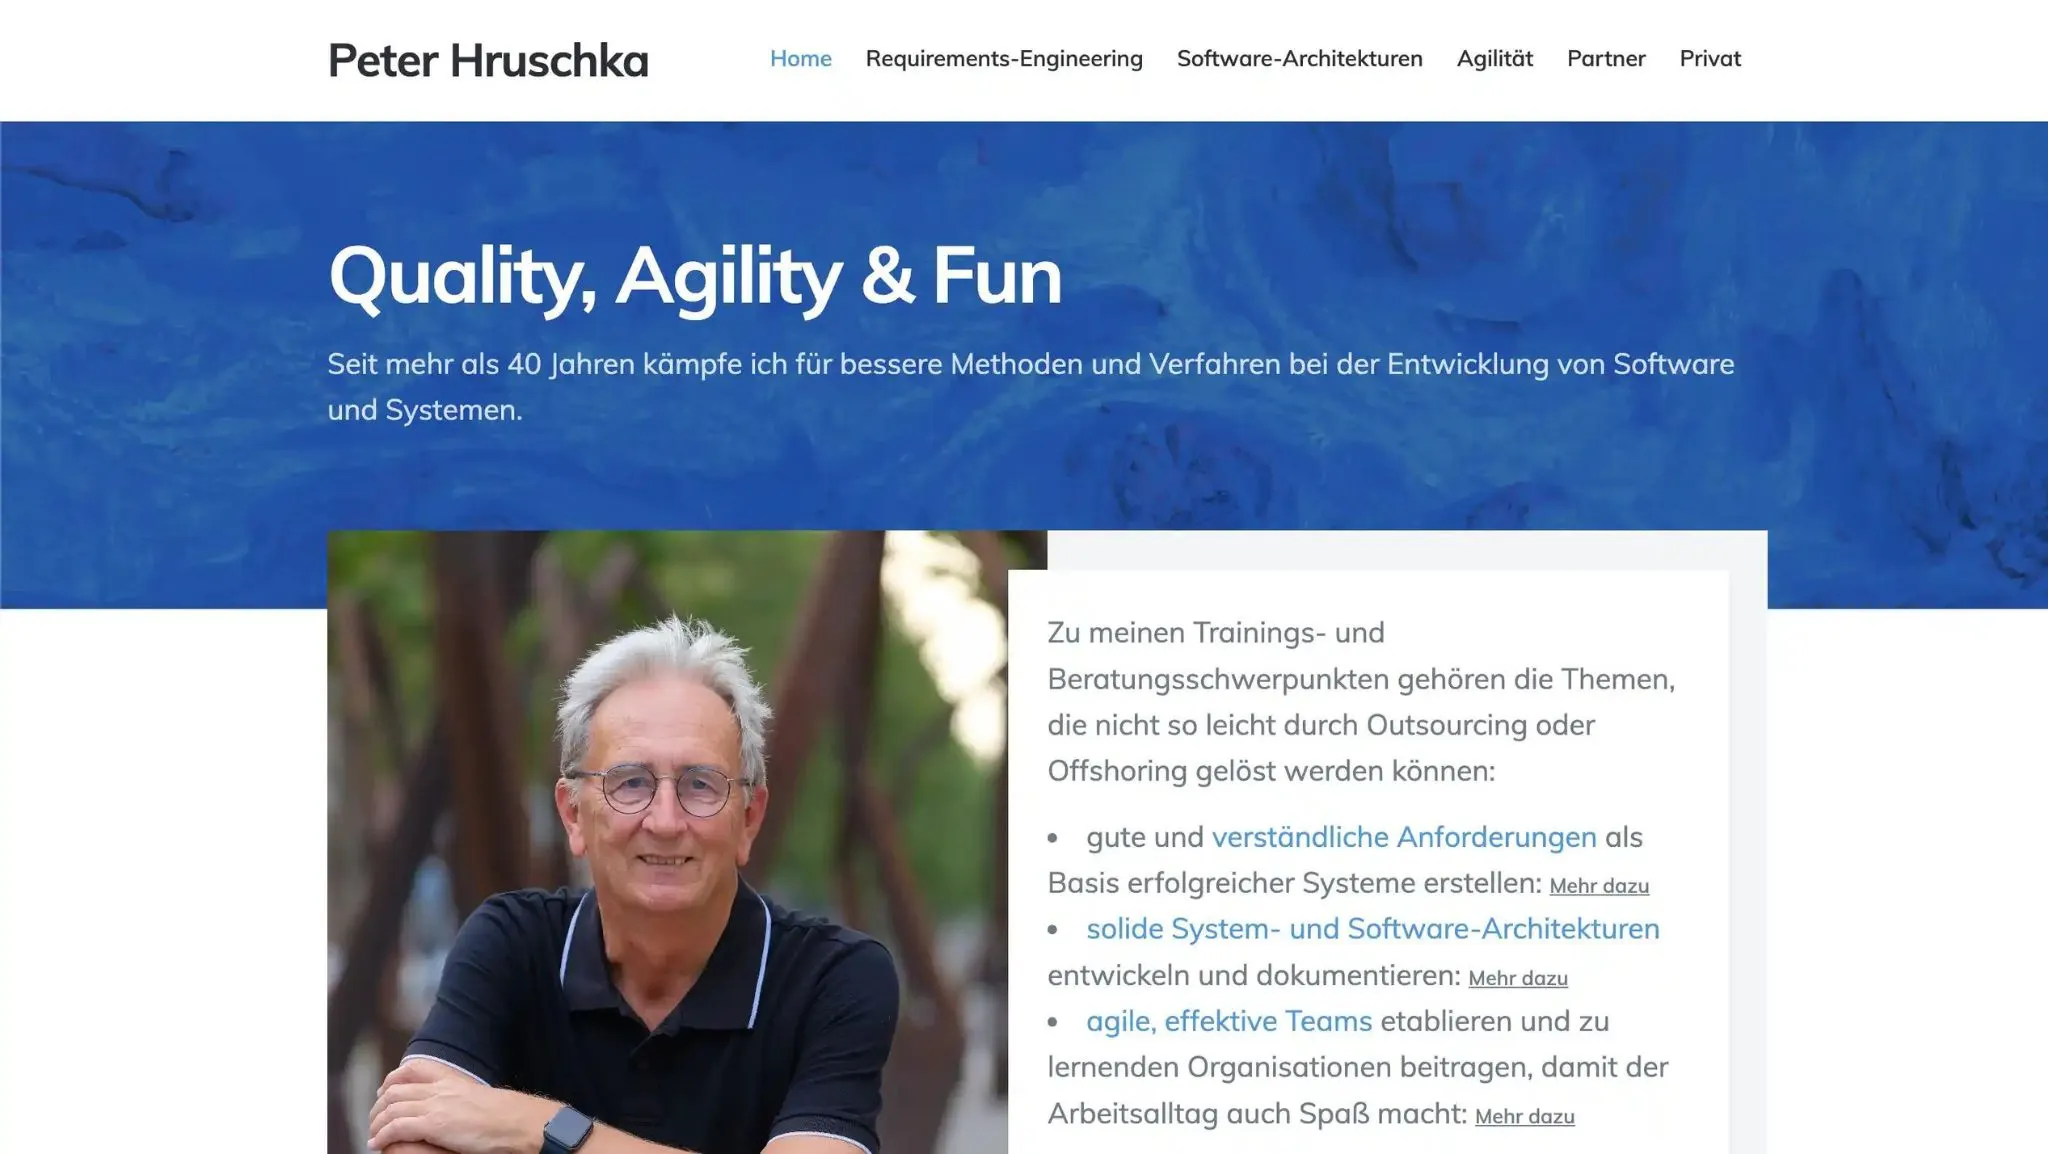 Website erstellt für Peter Hruschka, agile Softwareentwicklung und Requirements Engineering